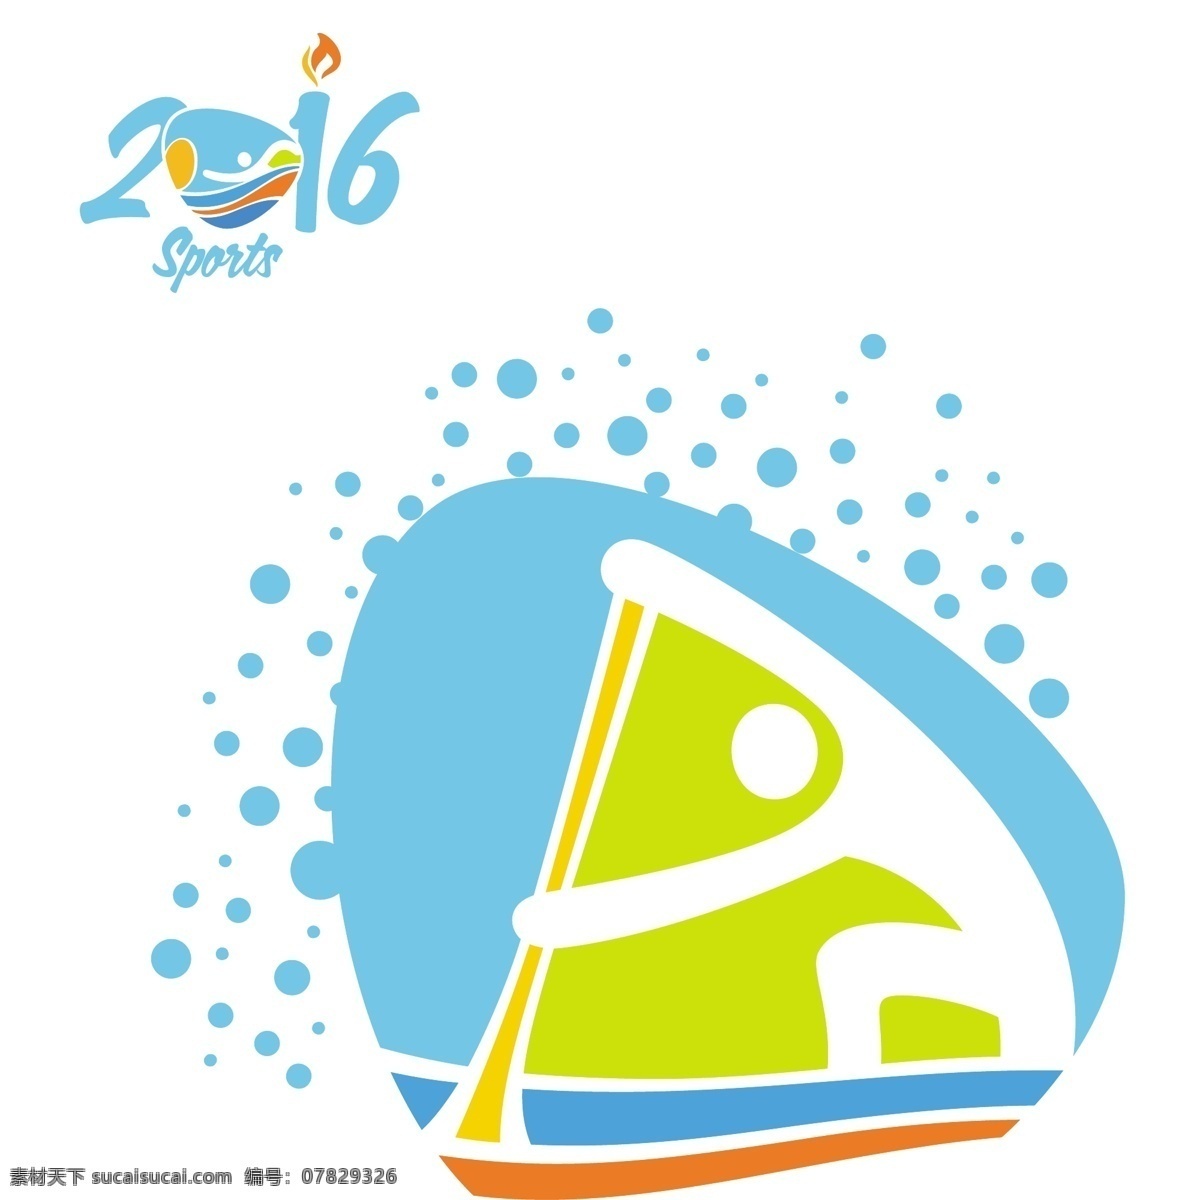 里约奥运背景 背景 标志 抽象 运动 健身 模板 健康 体育 剪影 人 优雅 事件 赢家 品牌 创意 2016 形状 培训